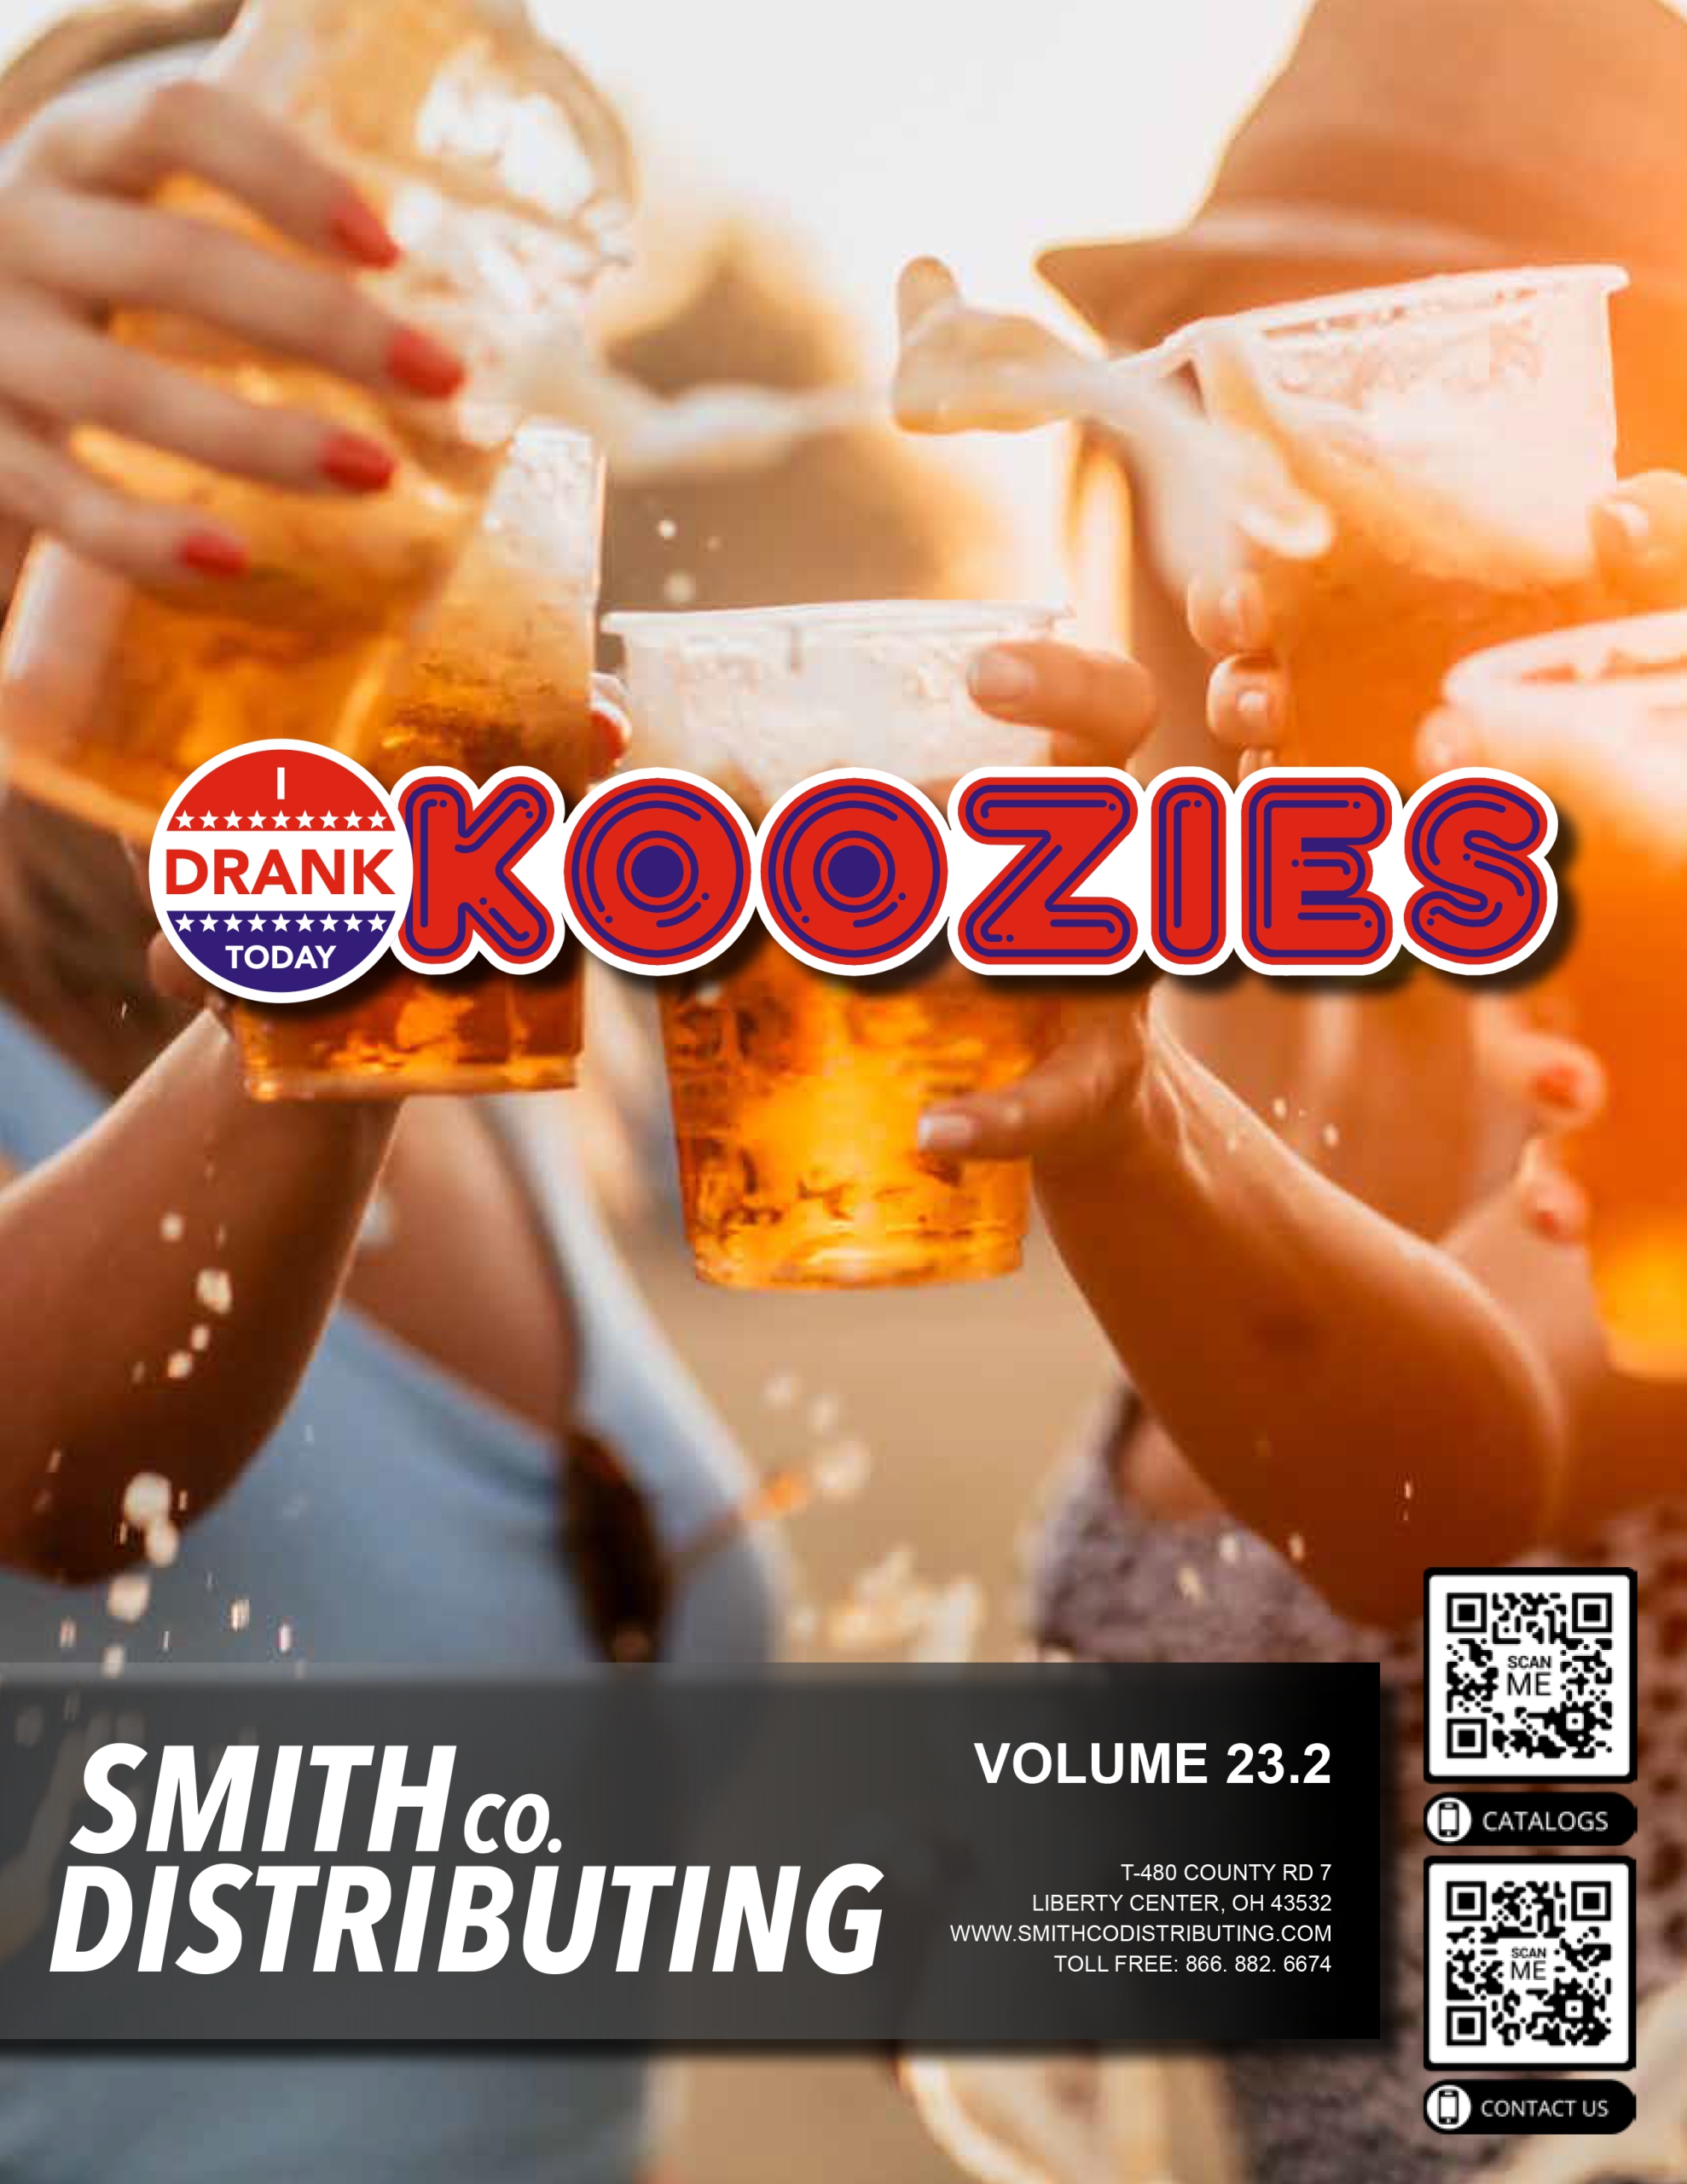 2023-i-drank-today-koozies-catalogue-thumbnail-web